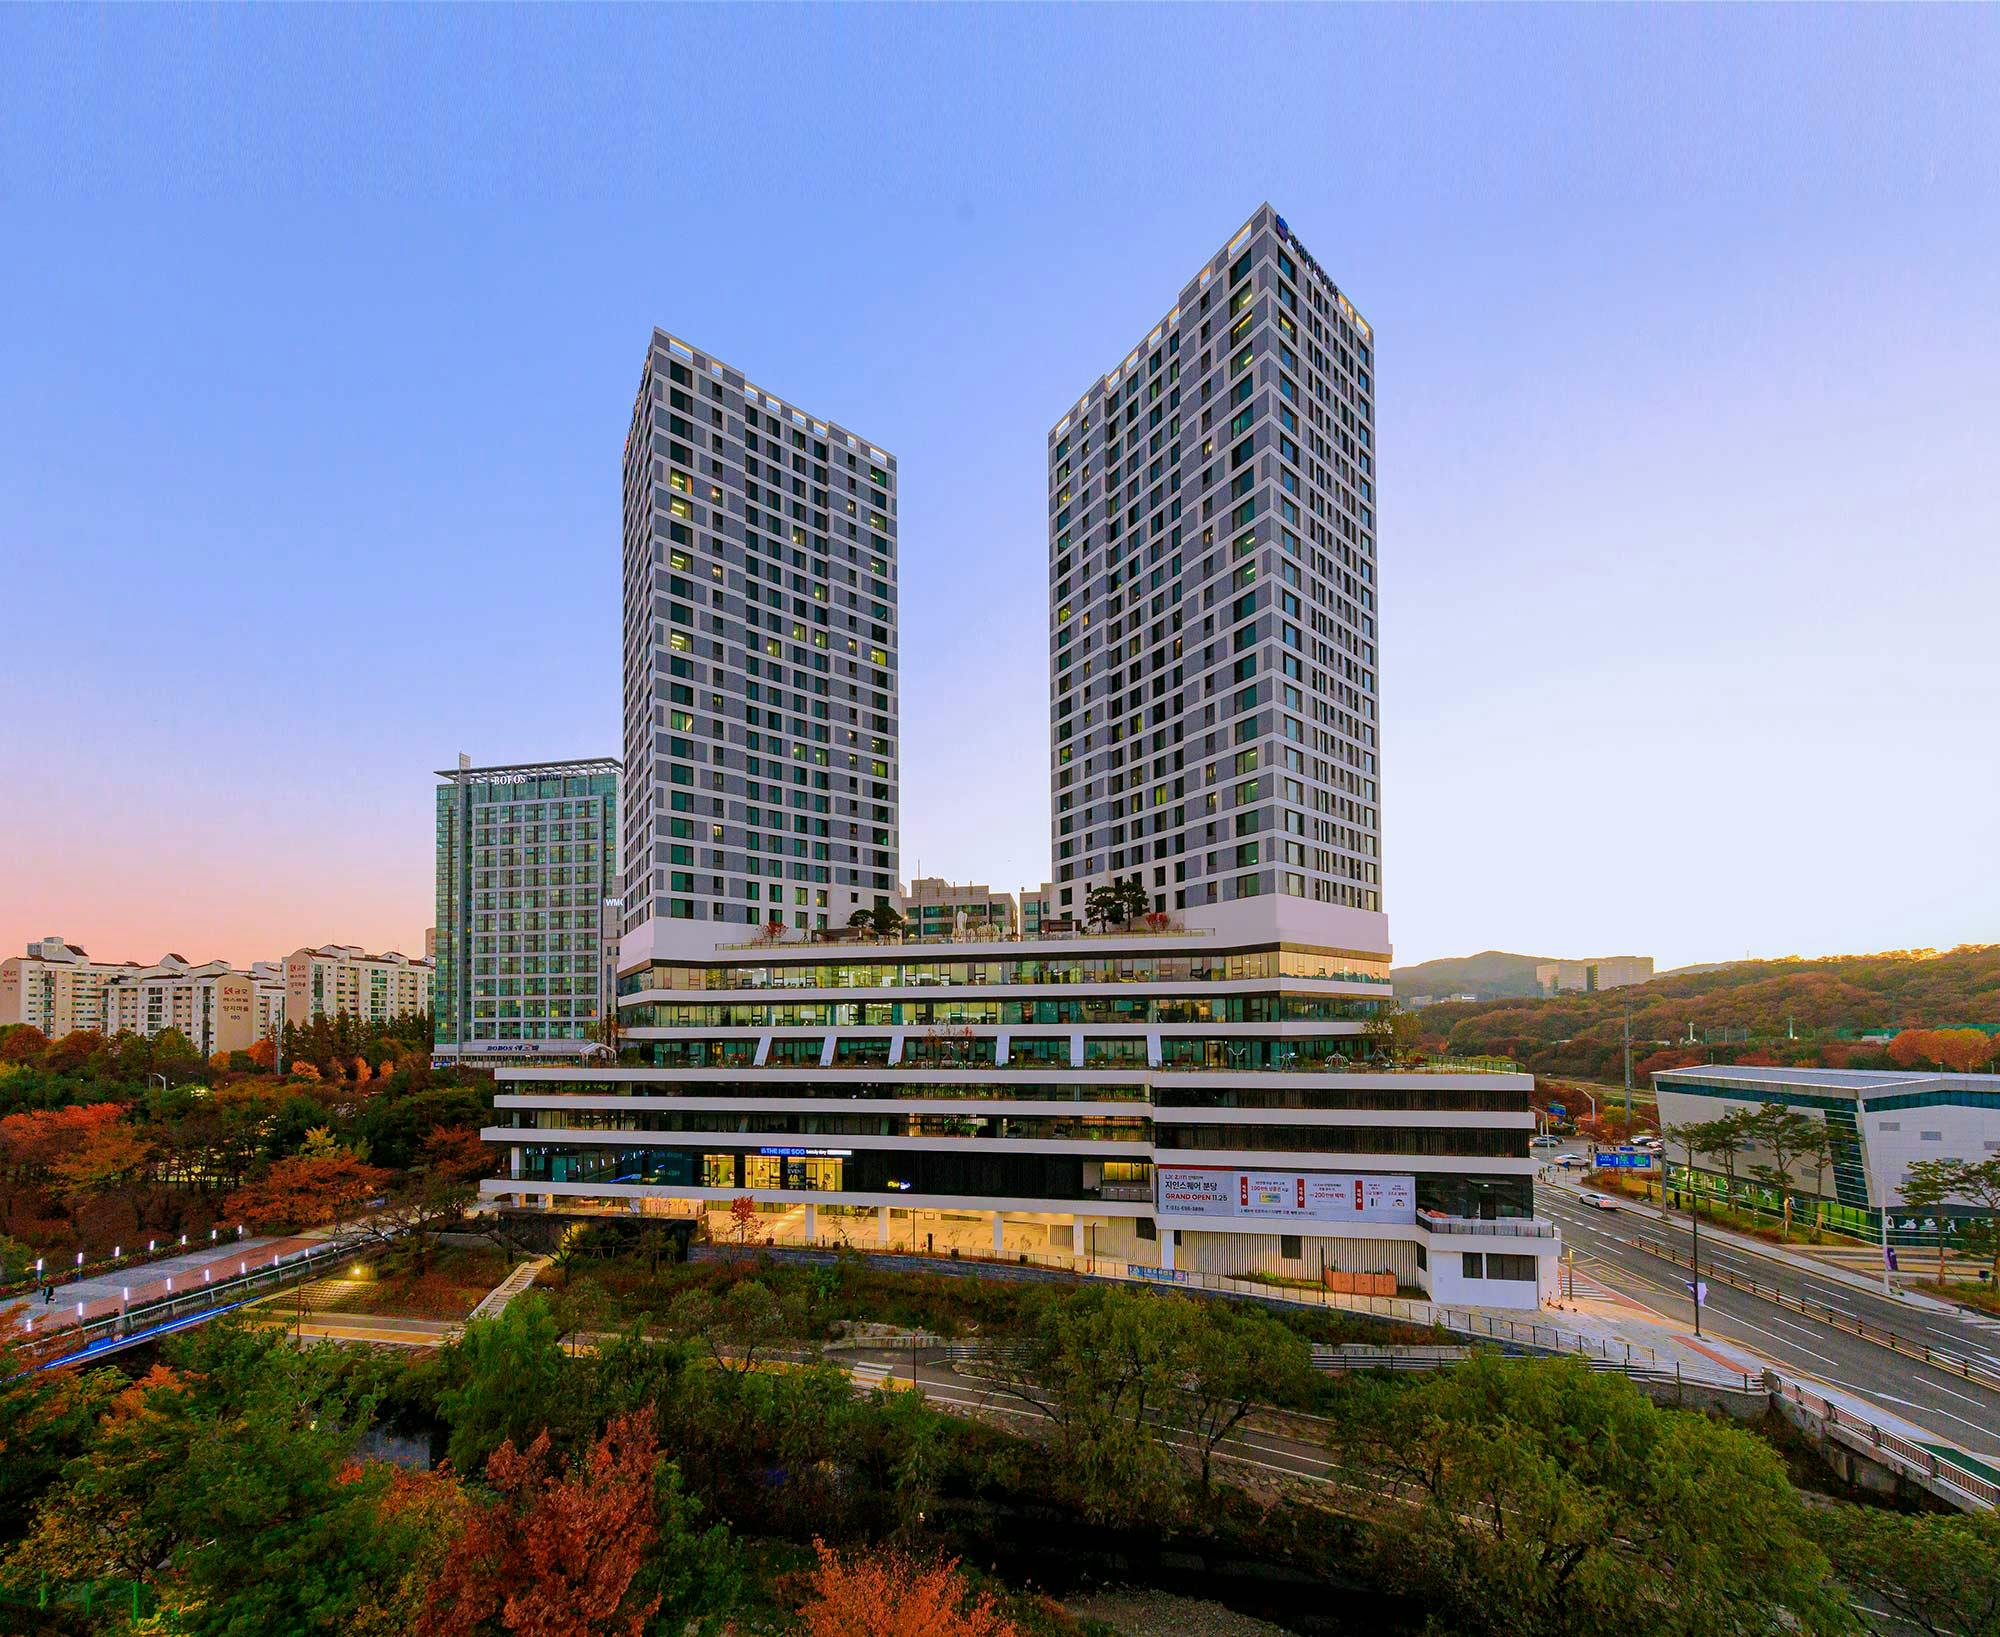 Bildnummer 33 des aktuellen Abschnitts von Korea: Ode to contemporary architecture amidst Sakura blossoms thanks to DKTN von Cosentino Deutschland